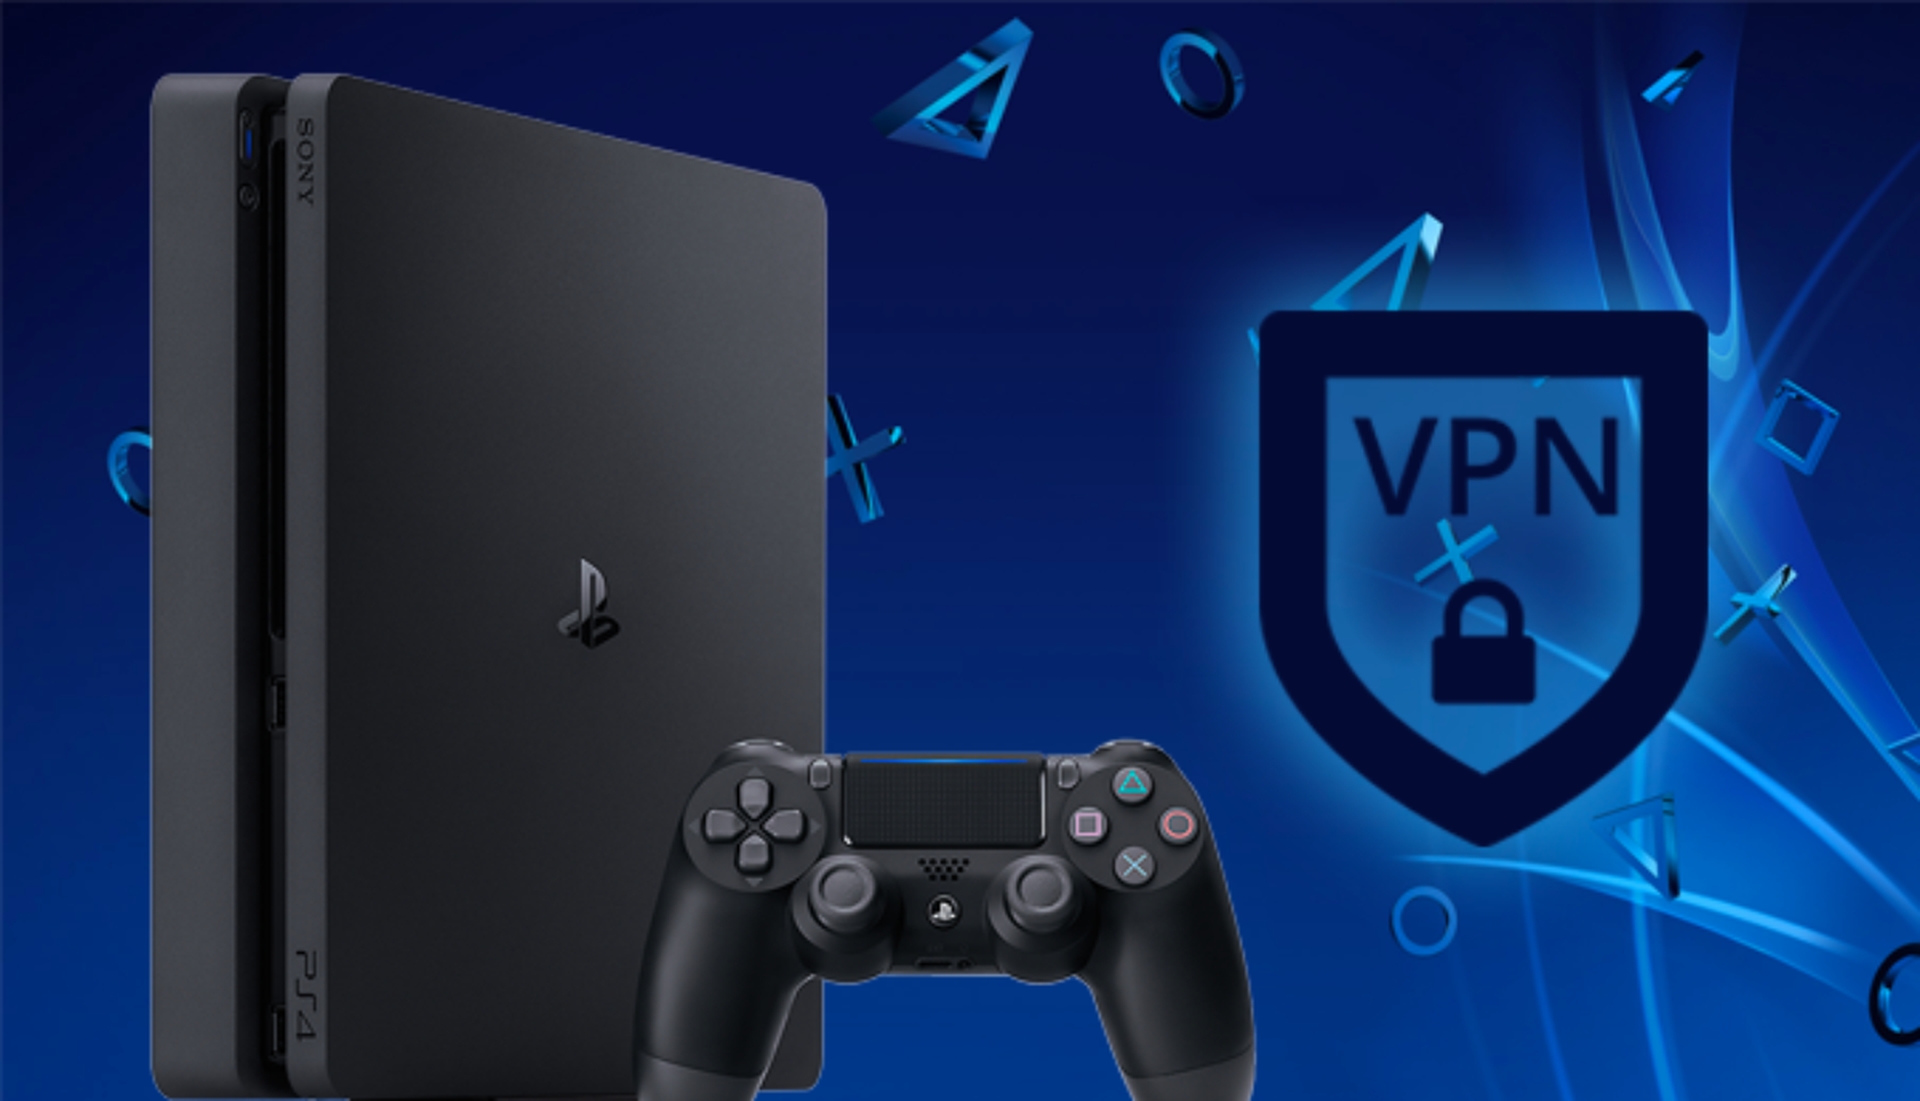 Melhores VPNs para PS4 e como usá-las?